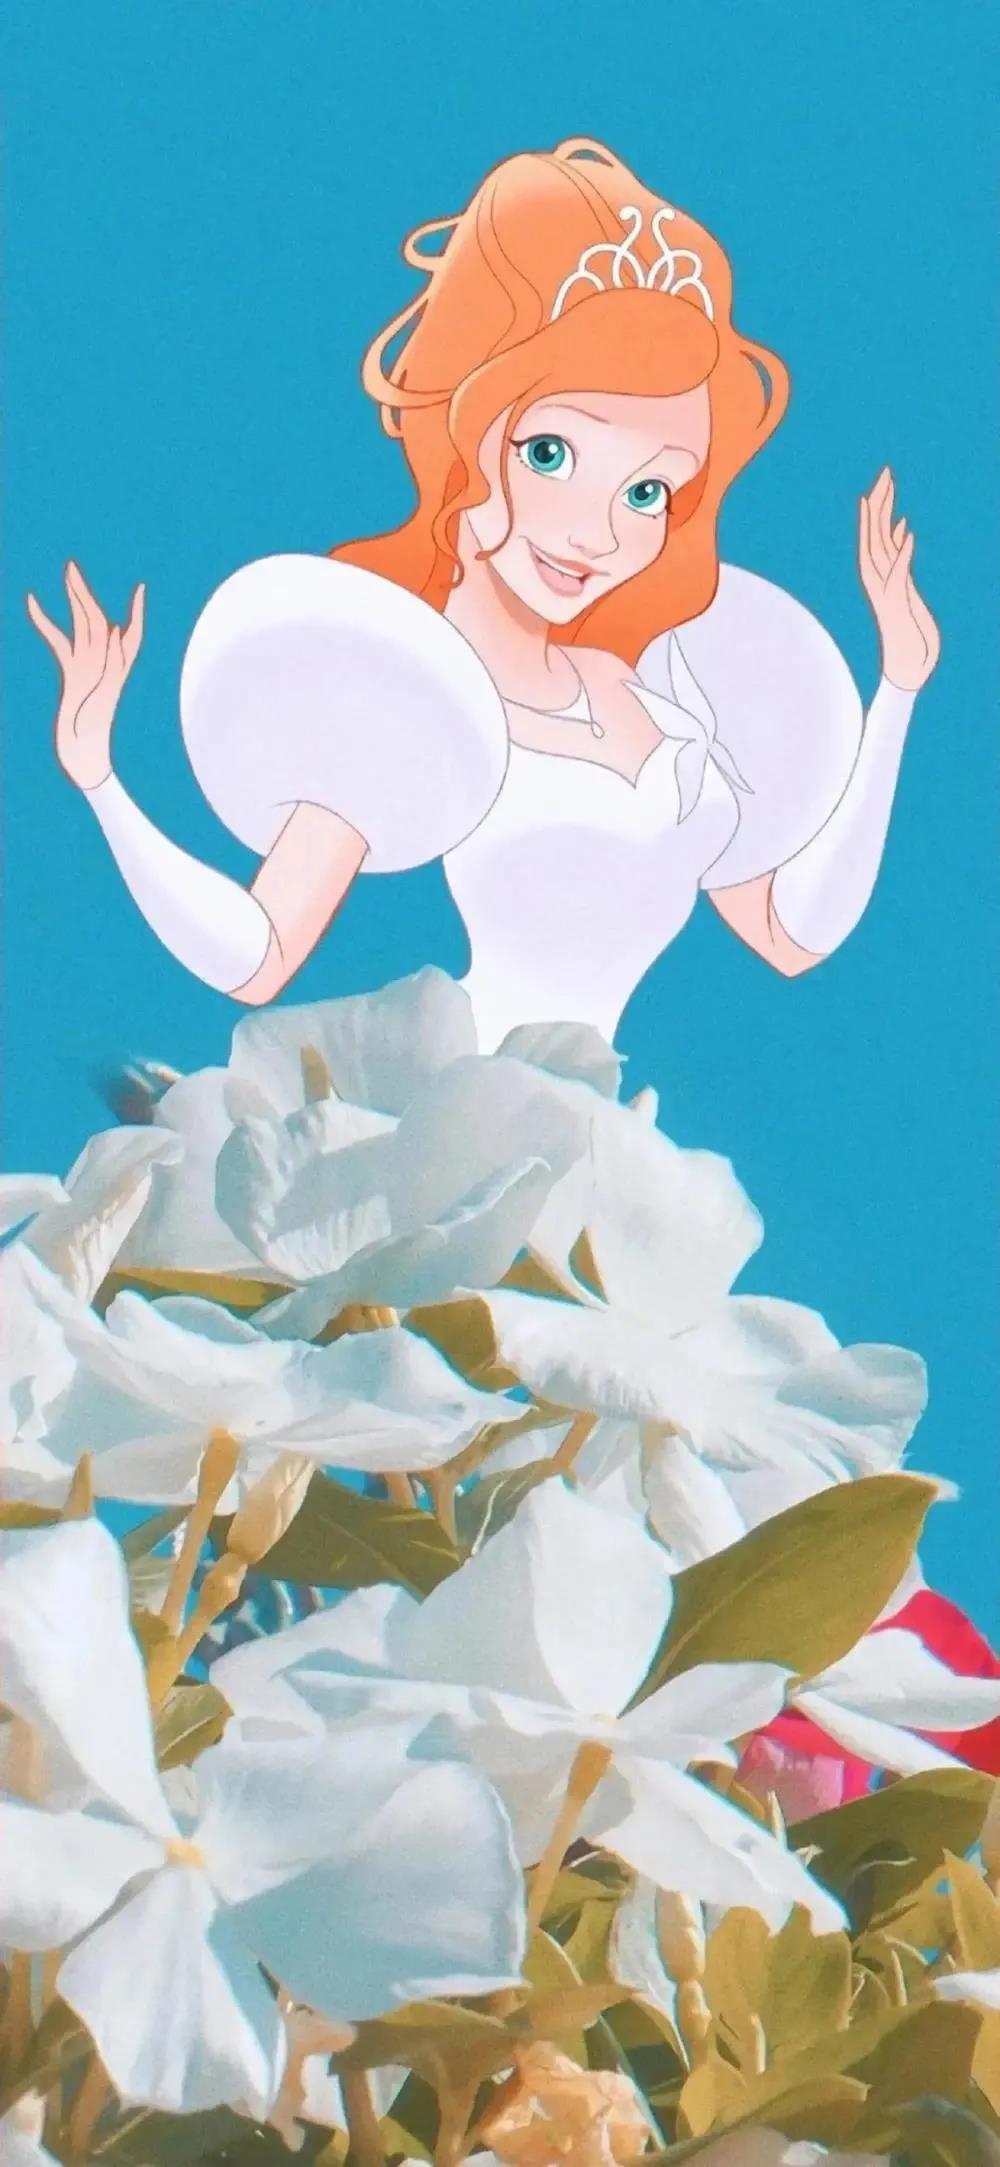 有哪些特别好看的迪士尼公主壁纸/头像? 